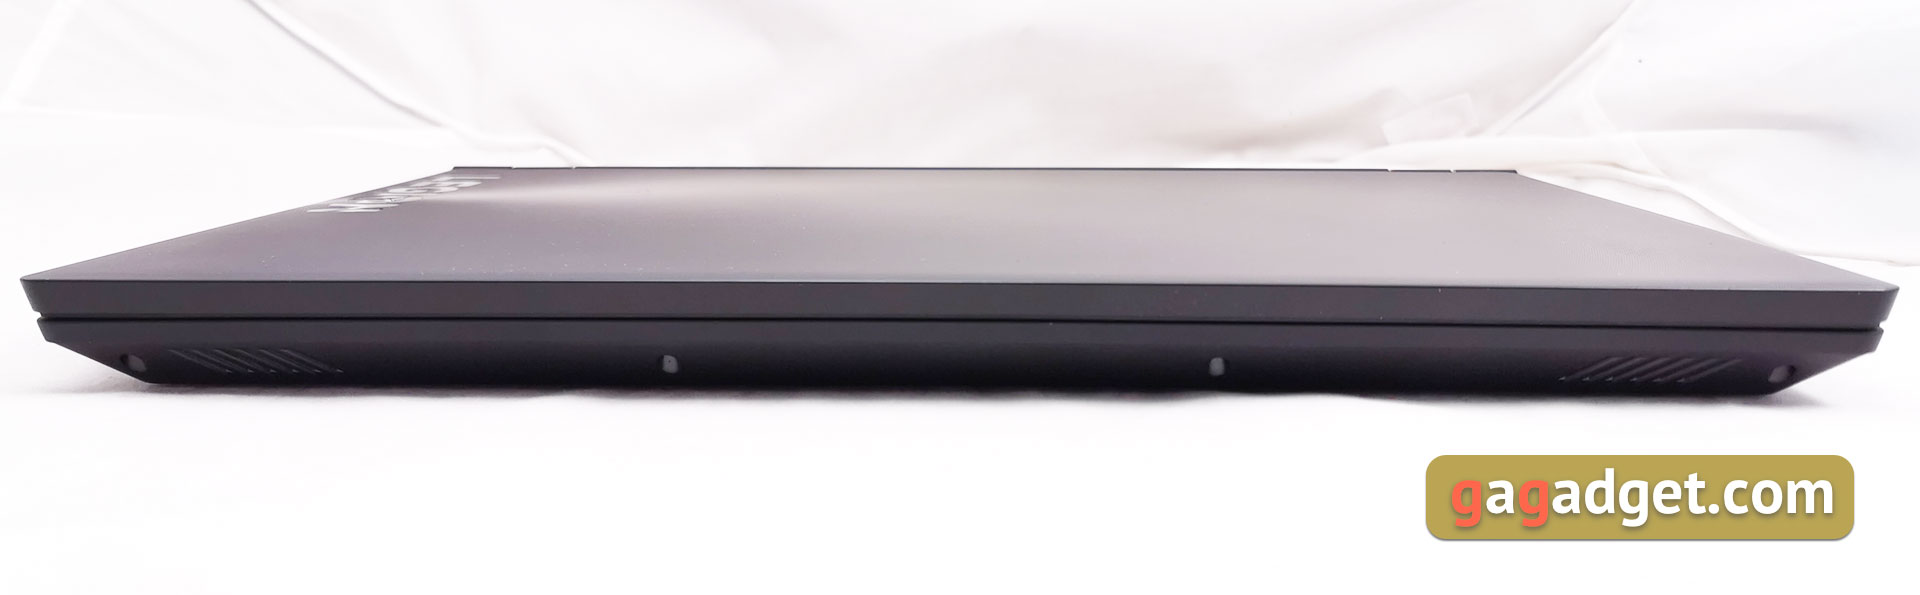 Обзор Lenovo Legion Y530: игровой ноутбук со строгим дизайном-11